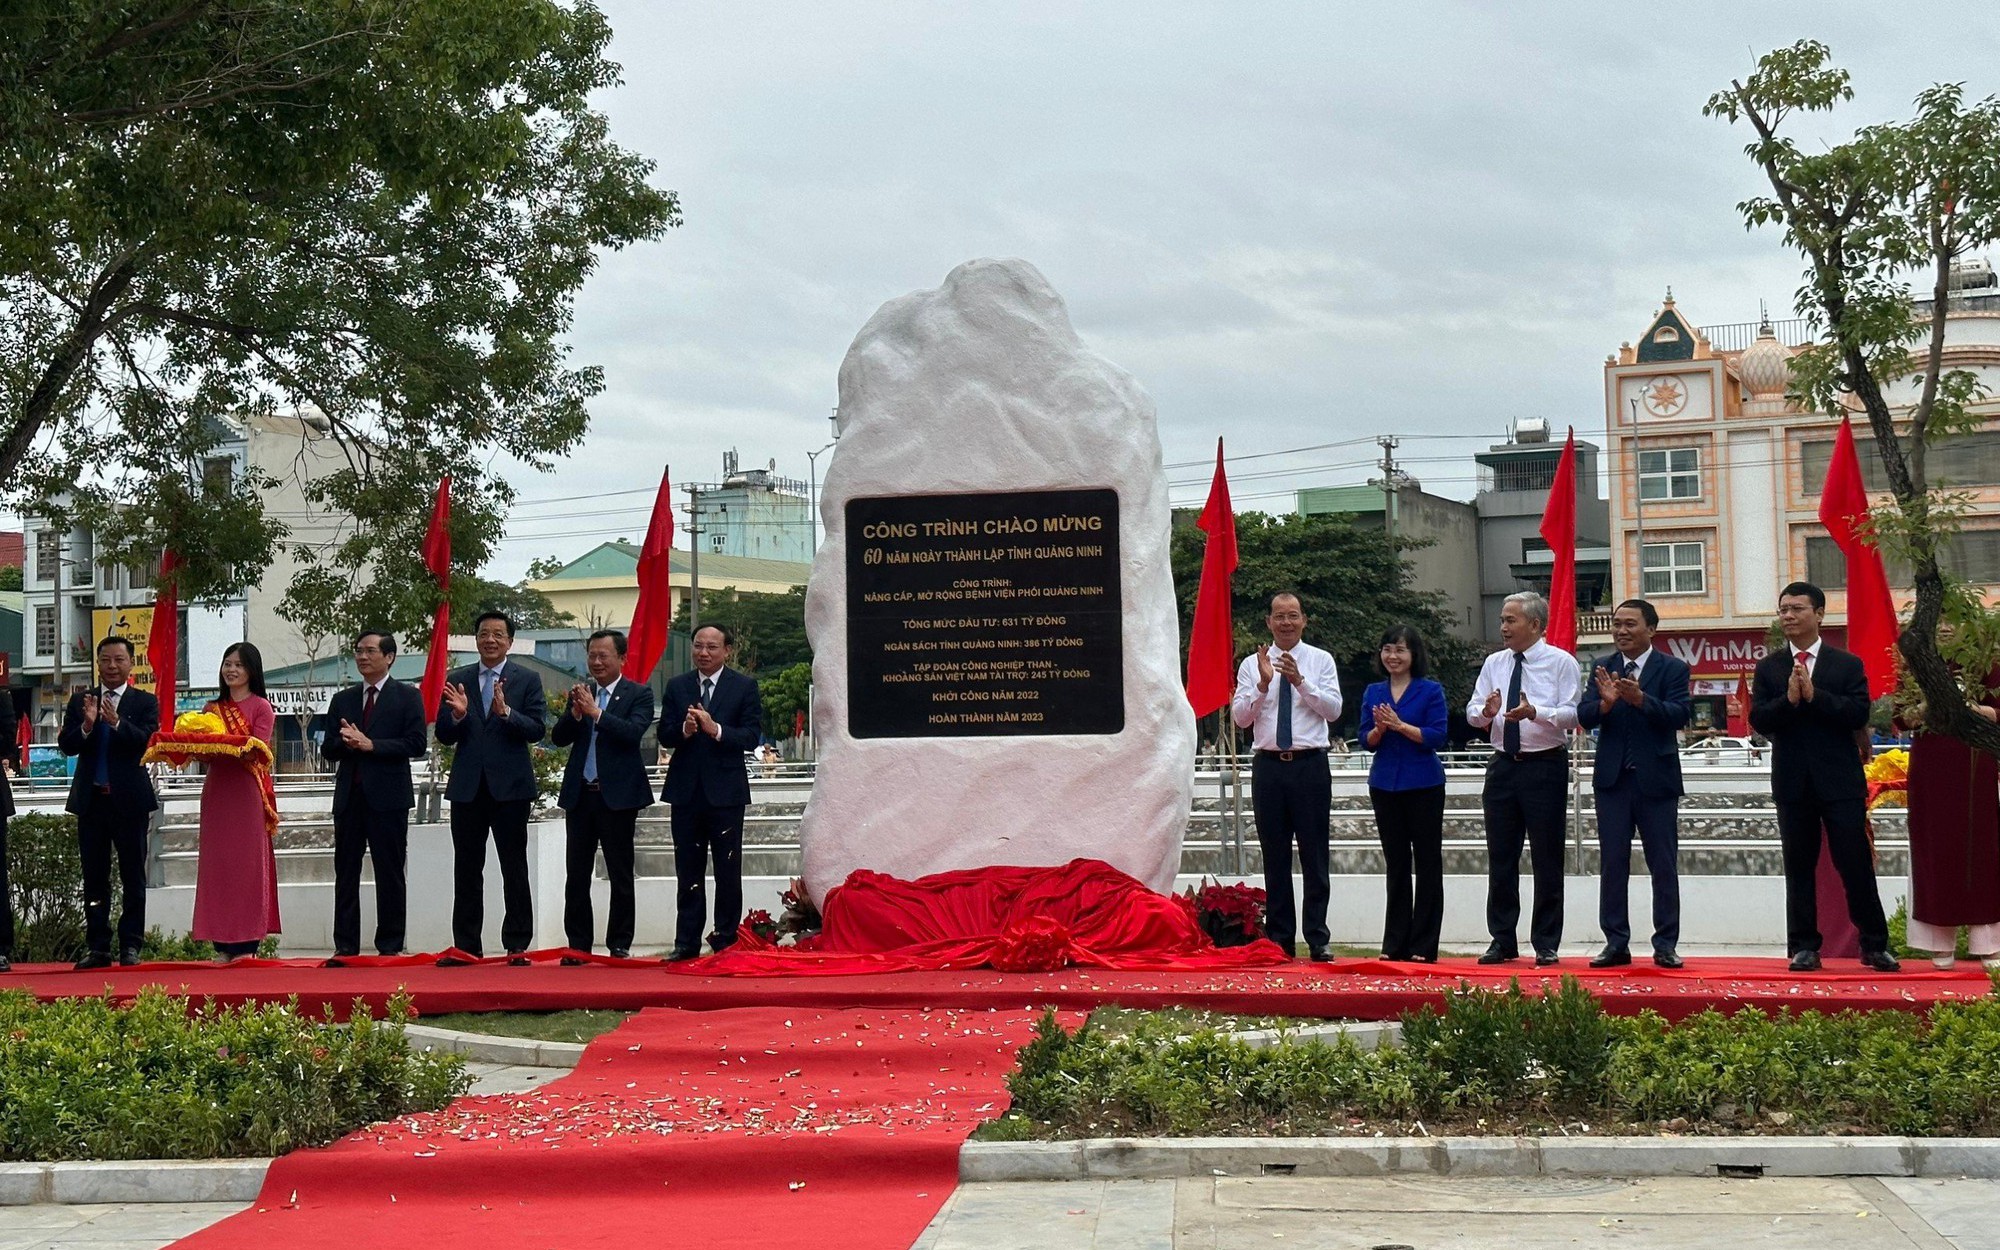 Gắn biển và khánh thành hàng loạt công trình chào mừng 60 năm Ngày thành lập tỉnh Quảng Ninh